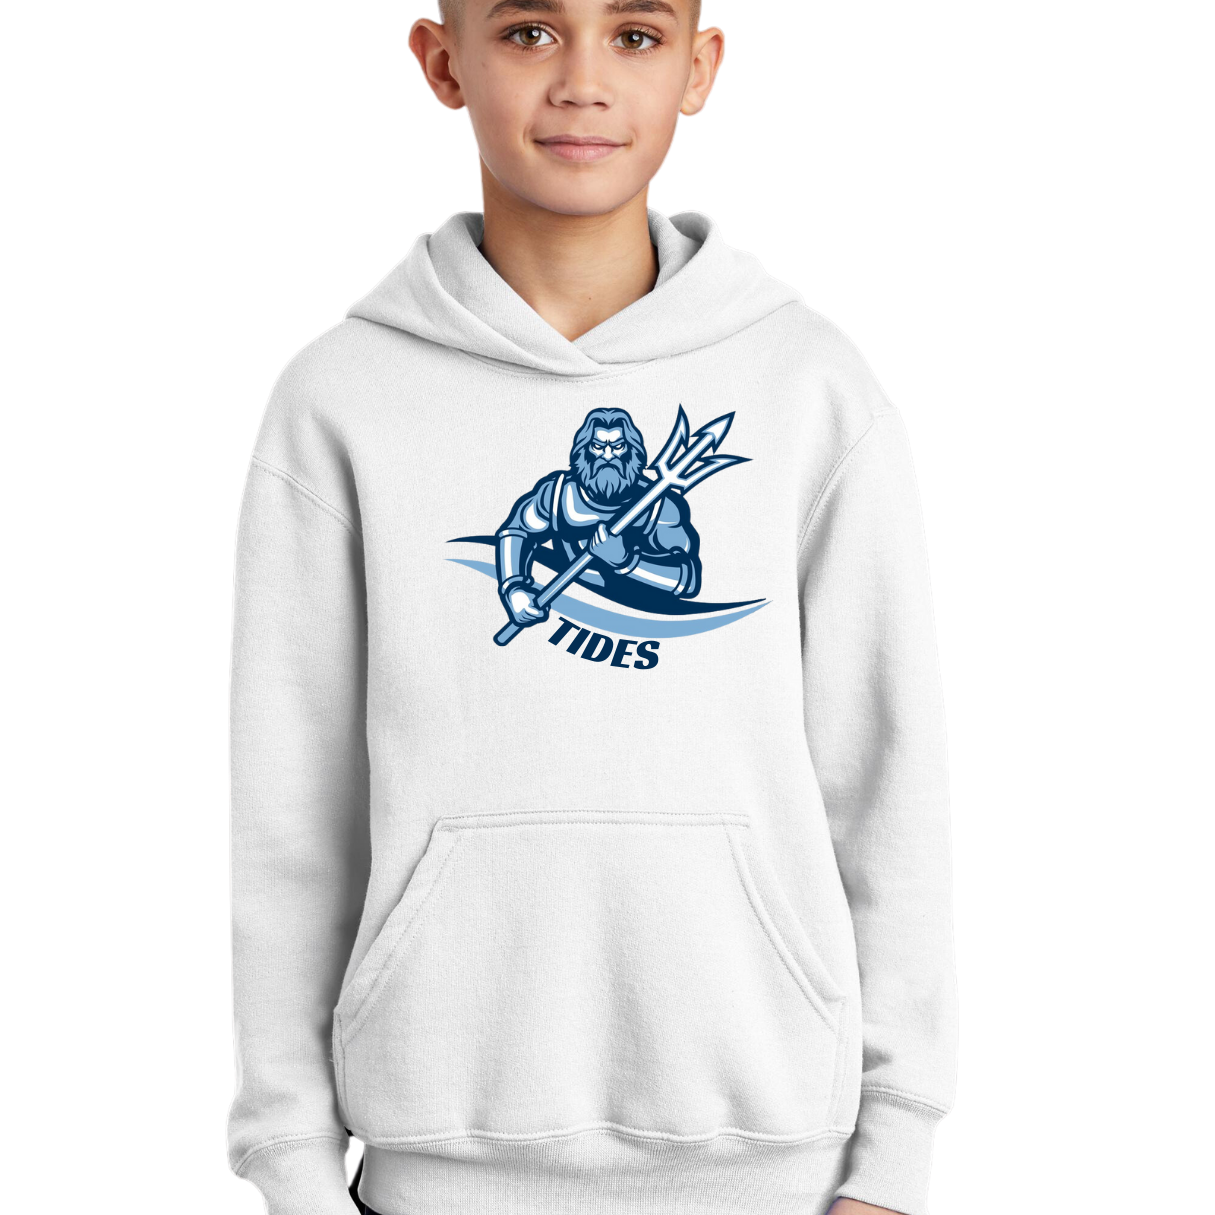 Poseidon Hooded Sweatshirt Adult and Youth